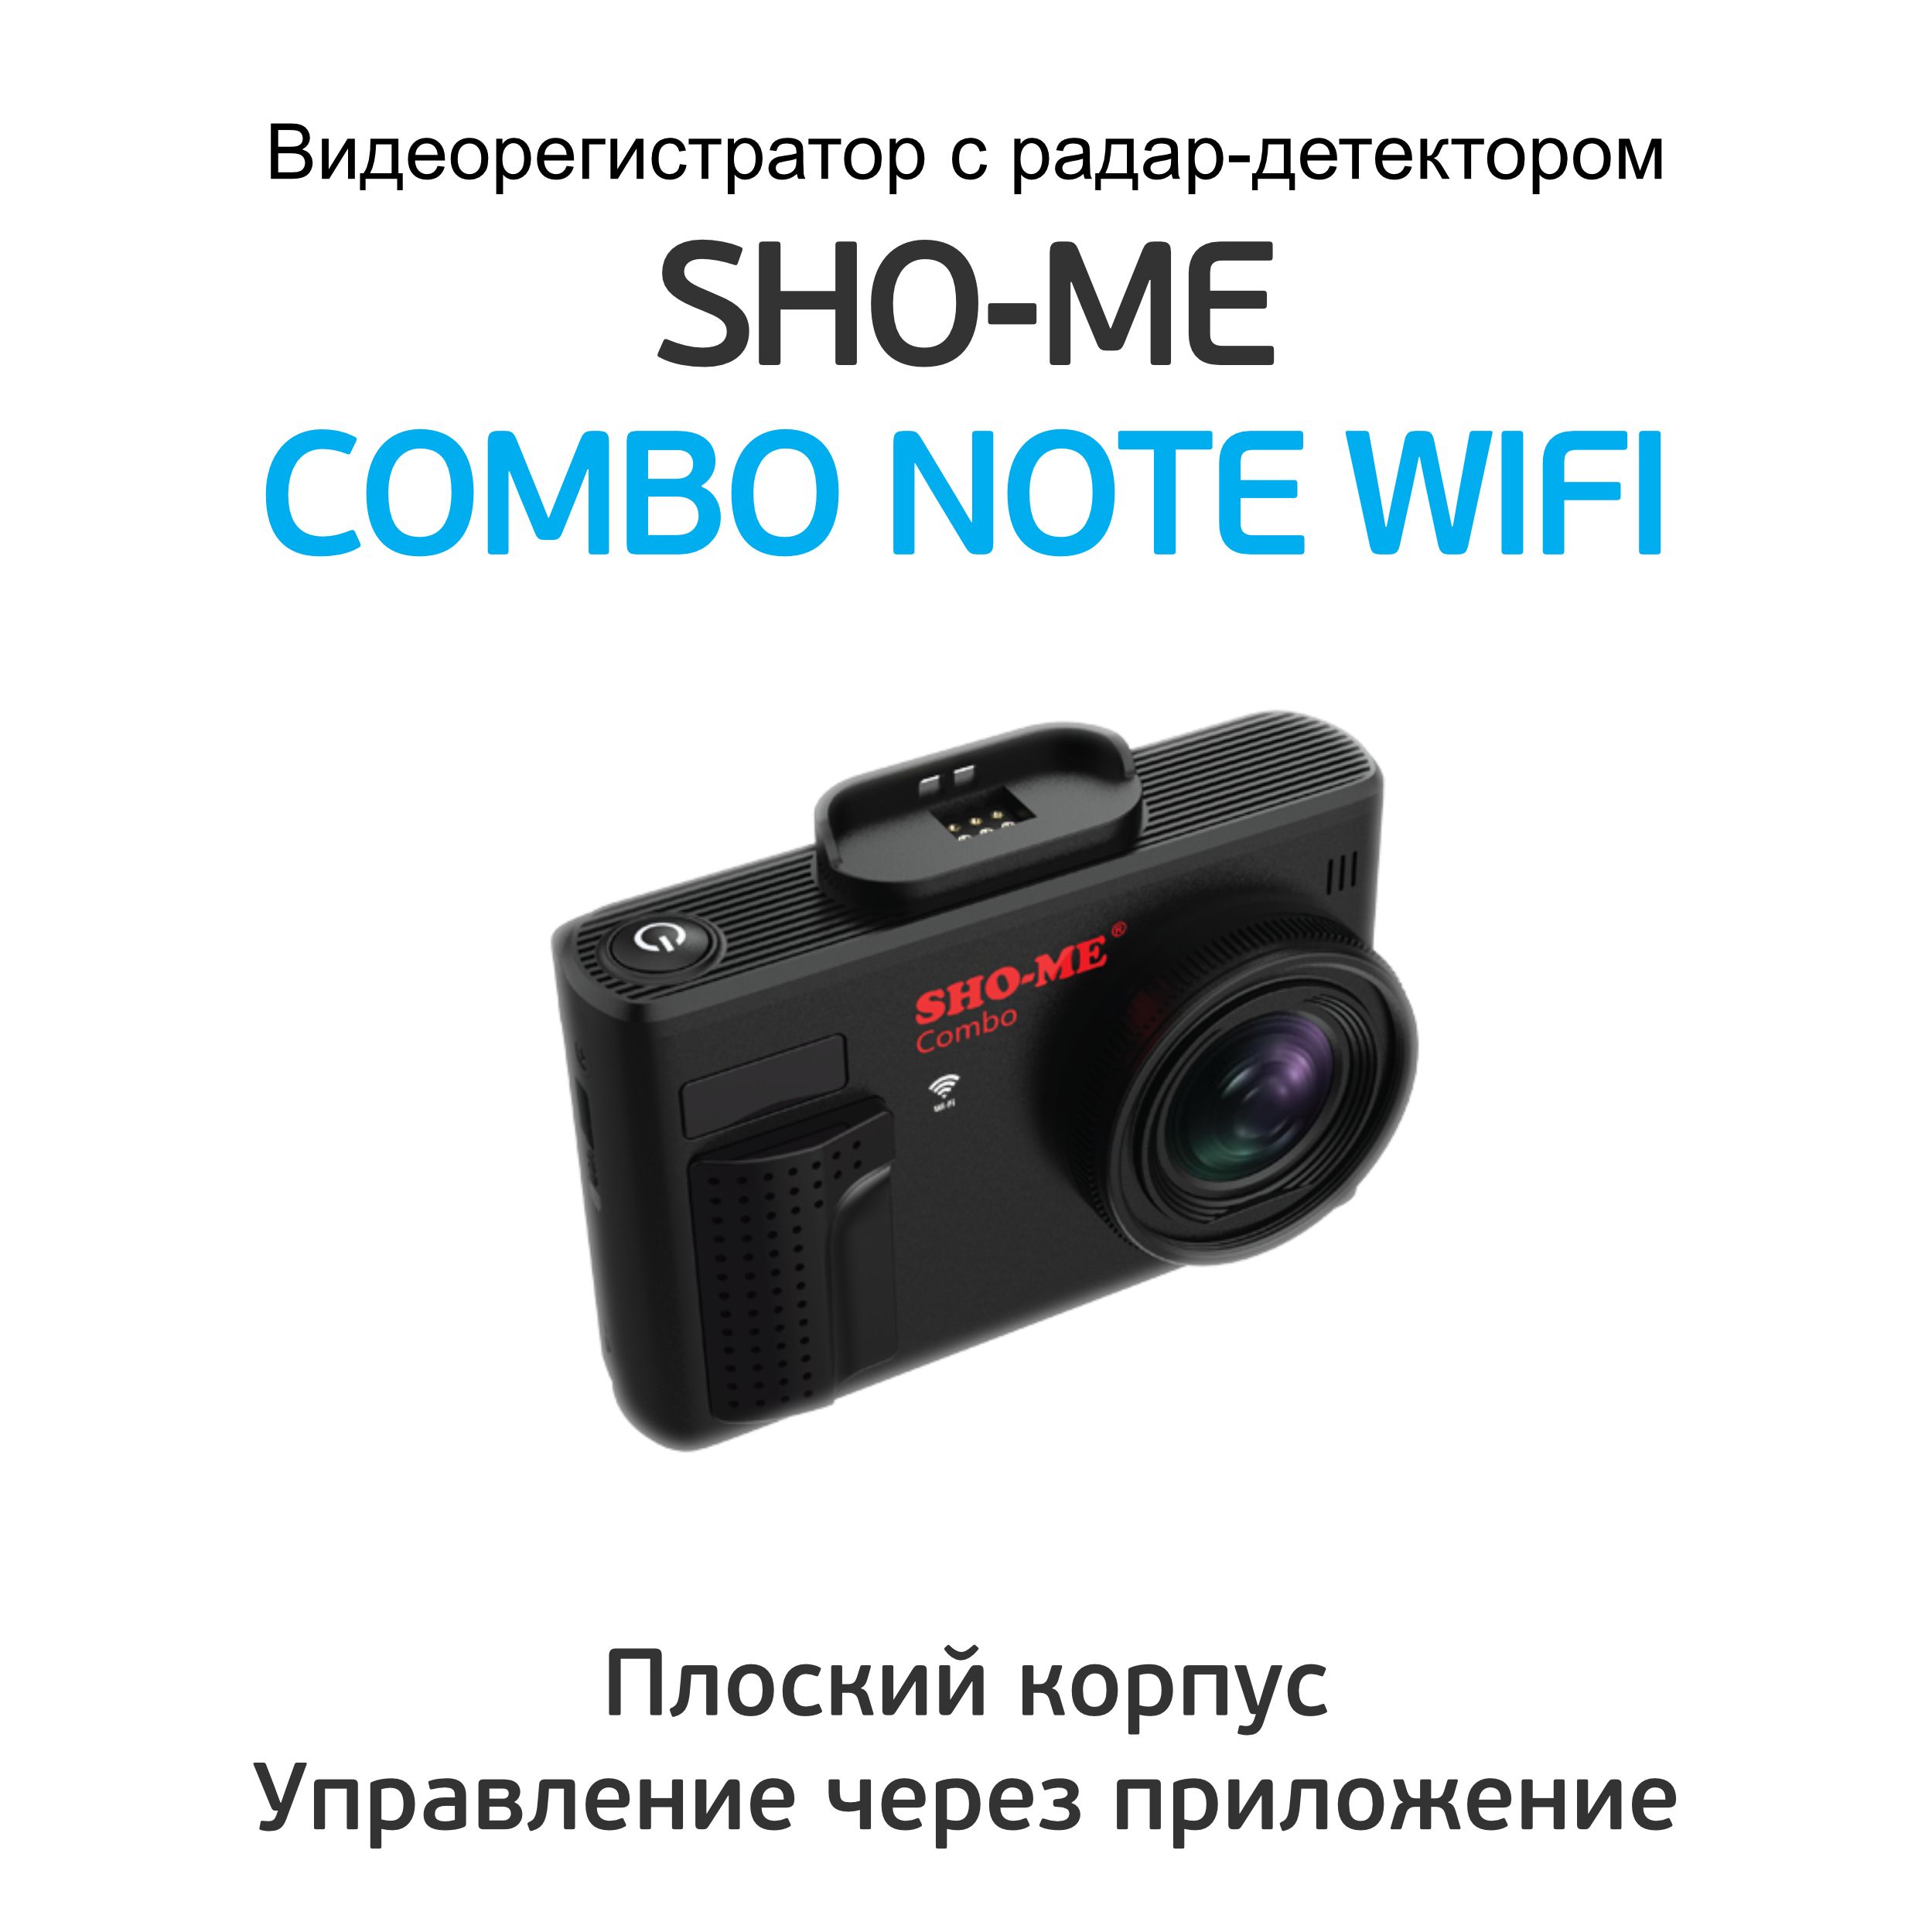 Видеорегистратор с радар-детектором Sho-me Combo Note WIFI. Sho-me Combo Note MSTAR. Sho-me Combo Note WIFI комплектация. Камера для видеорегистратора Sho-me Combo Note WIFI Duo. Sho me combo wi fi